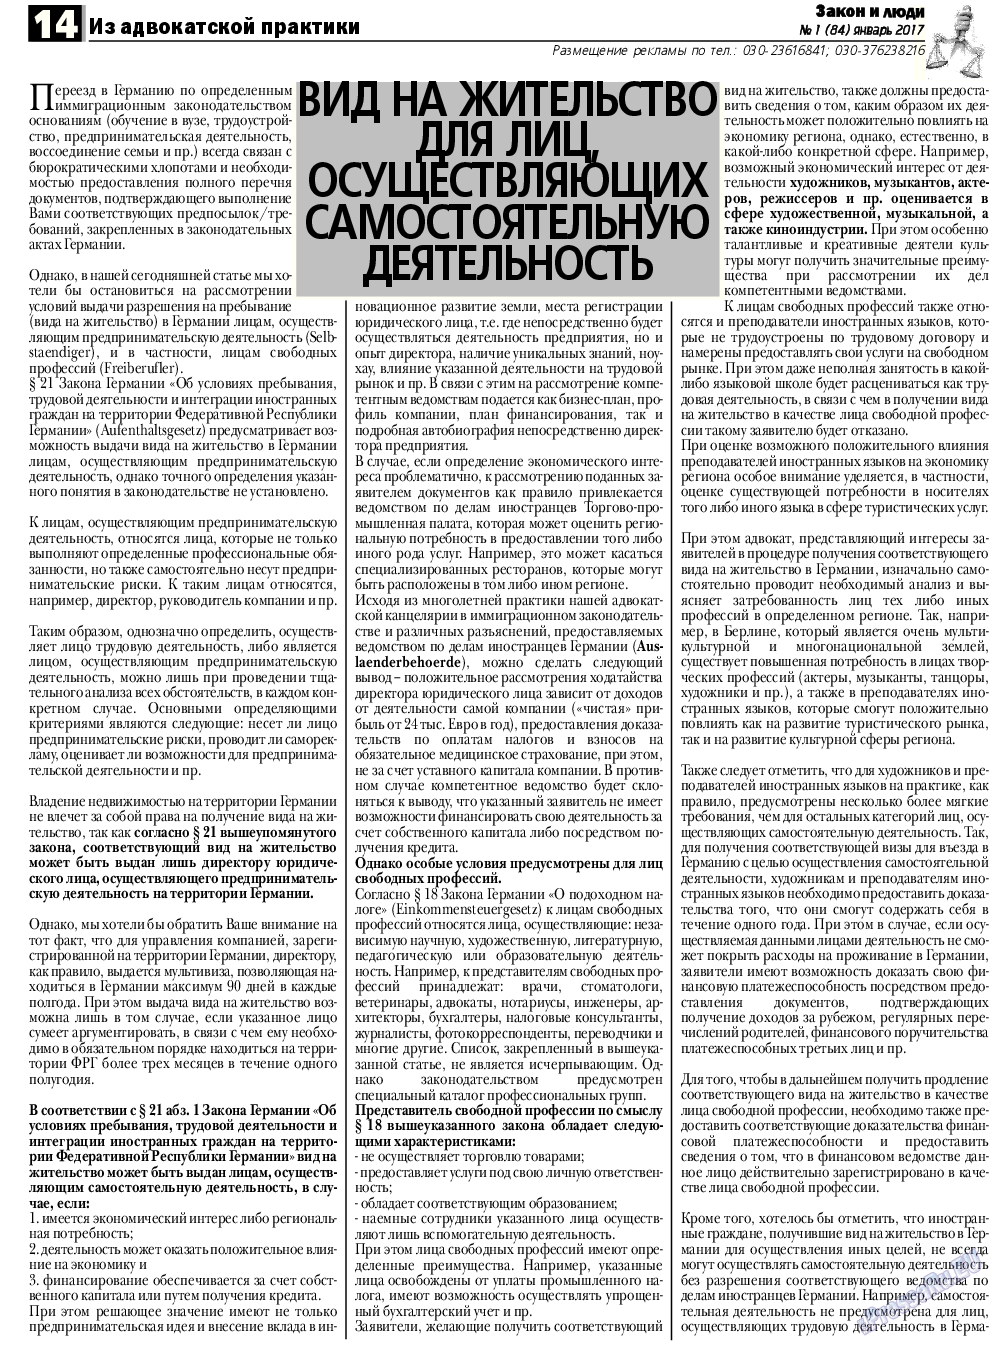 Закон и люди, газета. 2017 №1 стр.14